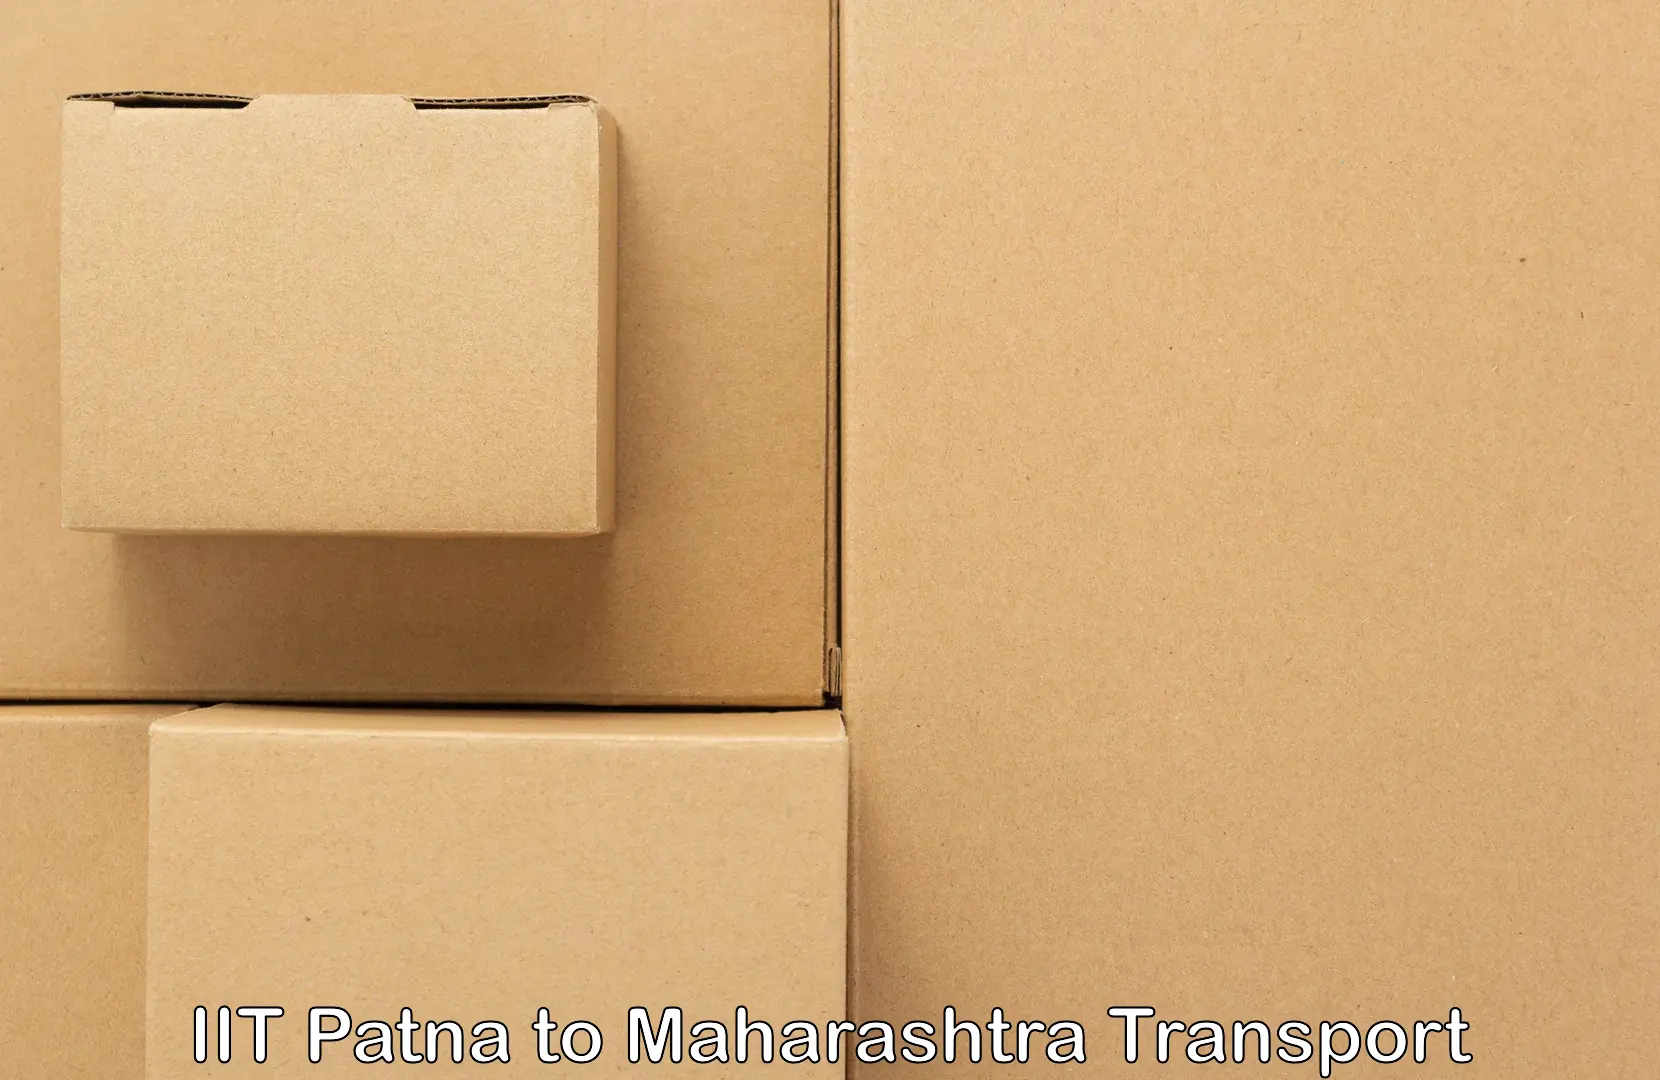 Commercial transport service IIT Patna to Degloor